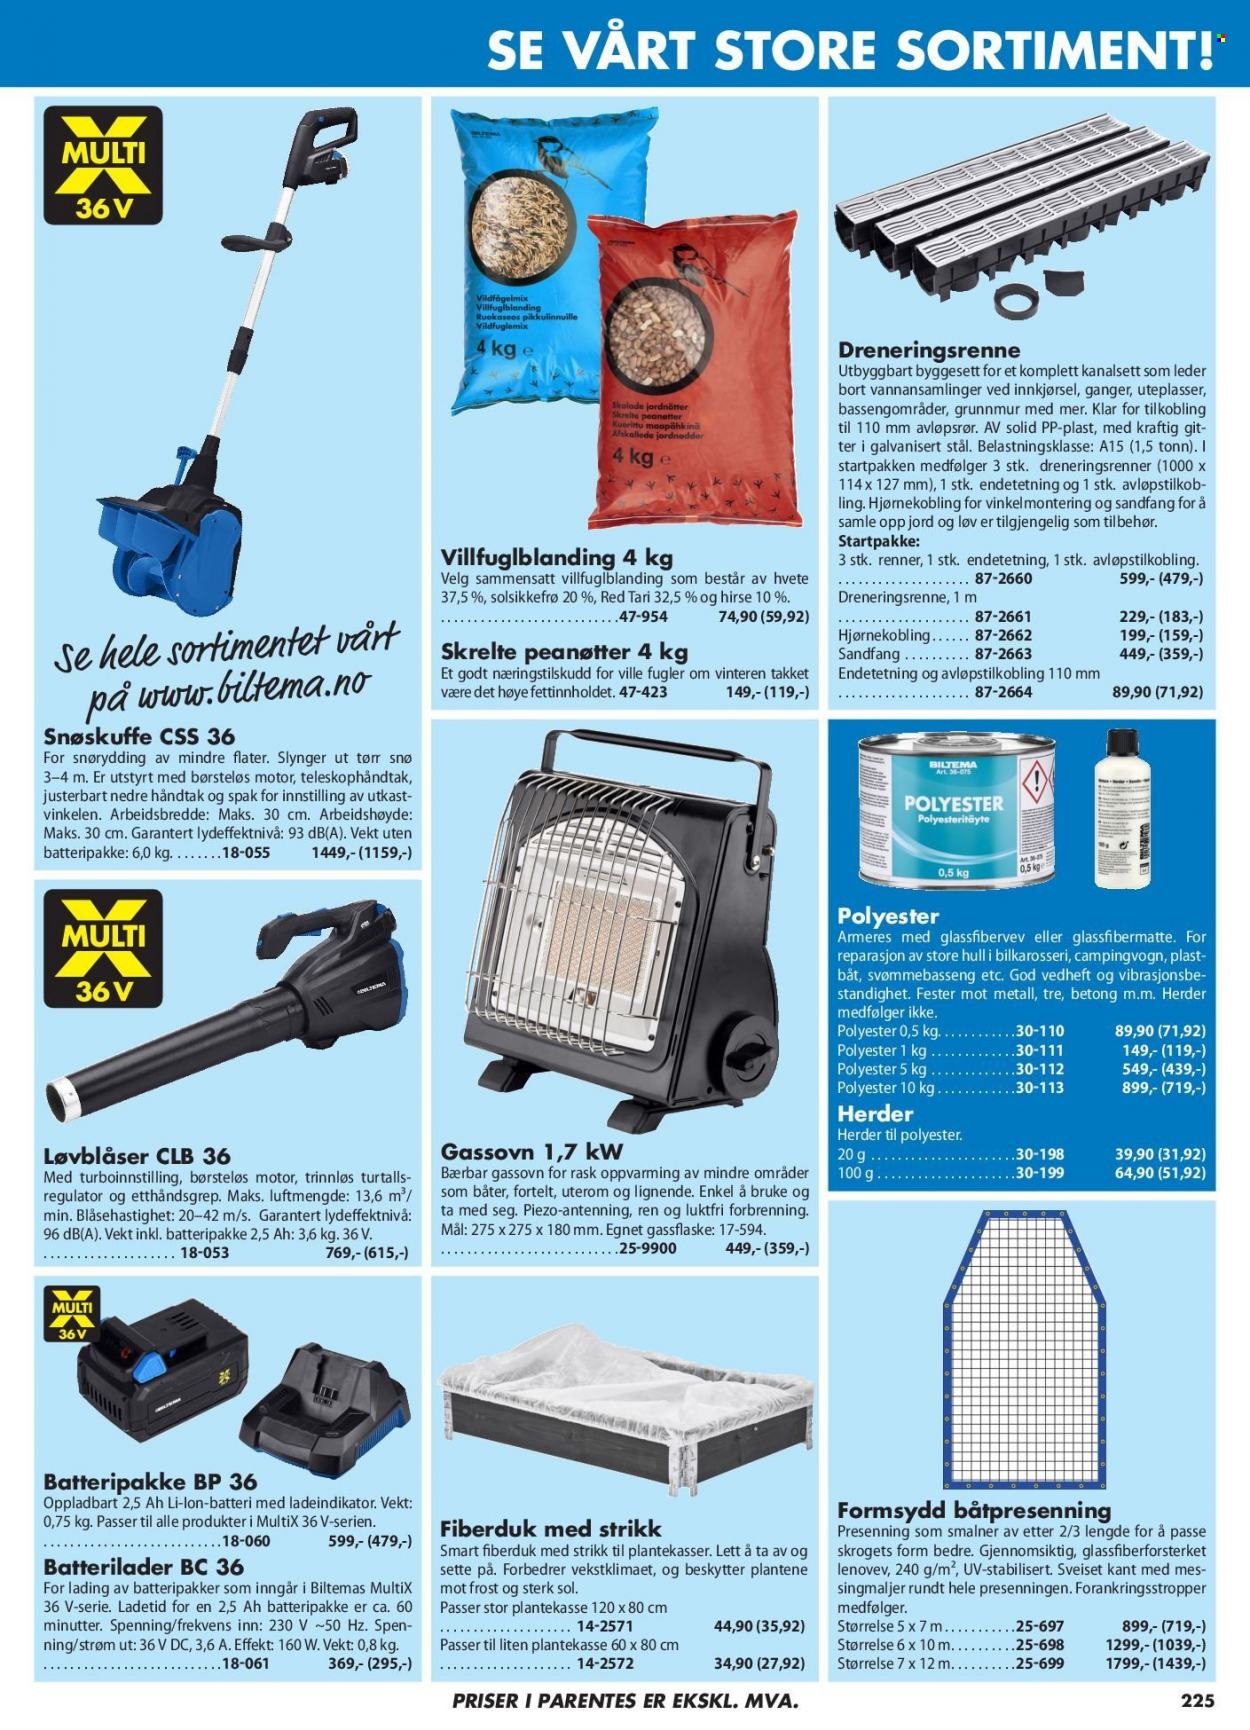 thumbnail - Kundeavis Biltema - Produkter fra tilbudsaviser - batterilader, løvblåser, presenning, svømmebasseng, snøskuffe. Side 225.